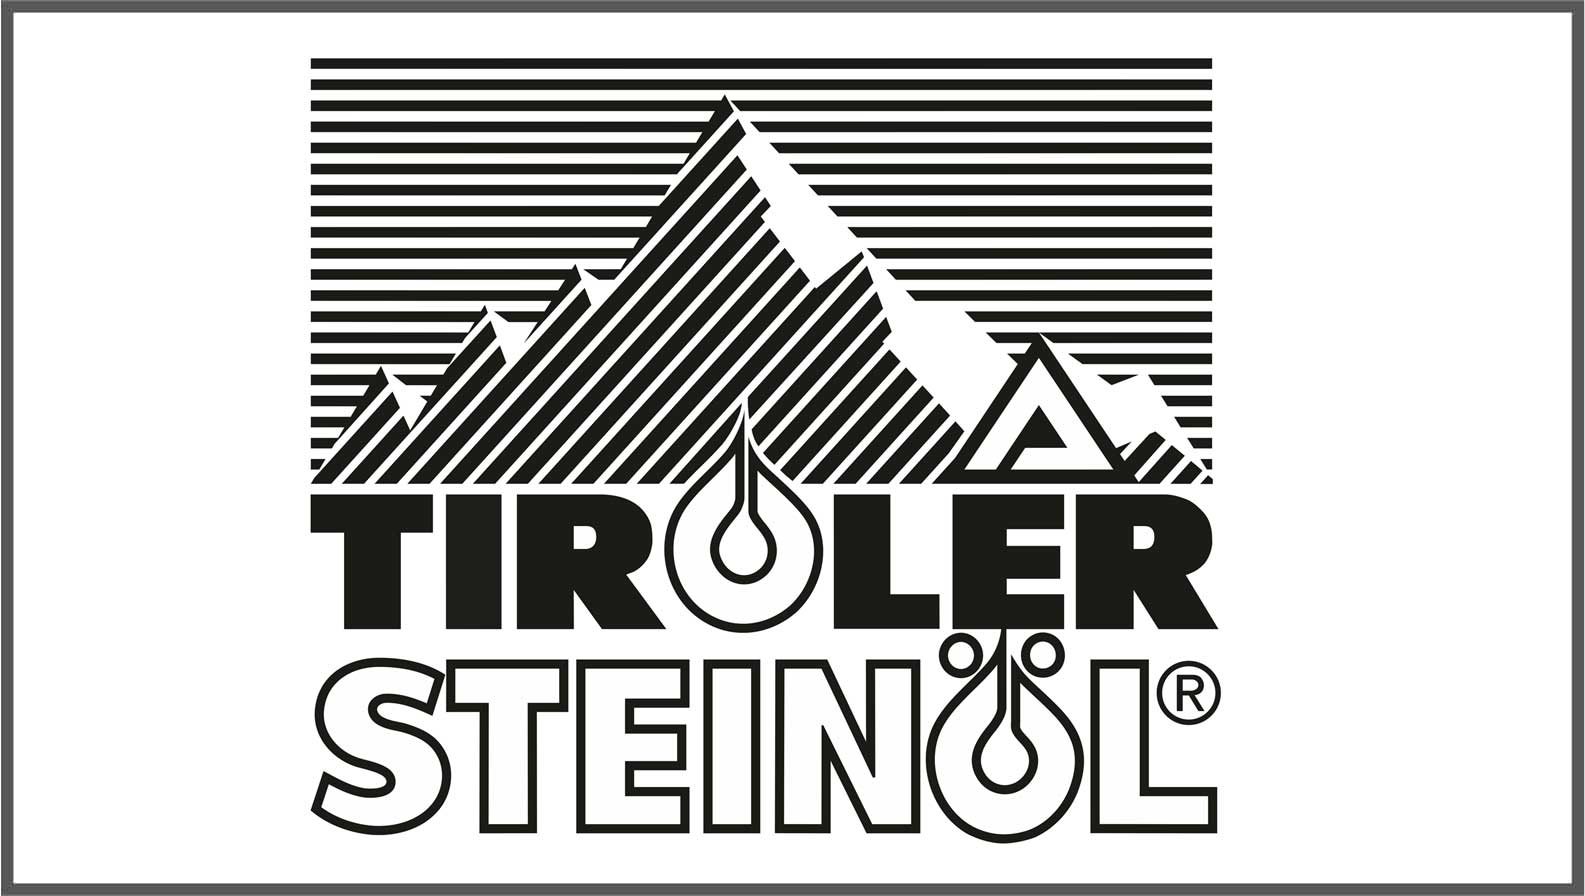 Tiroler Steinöl